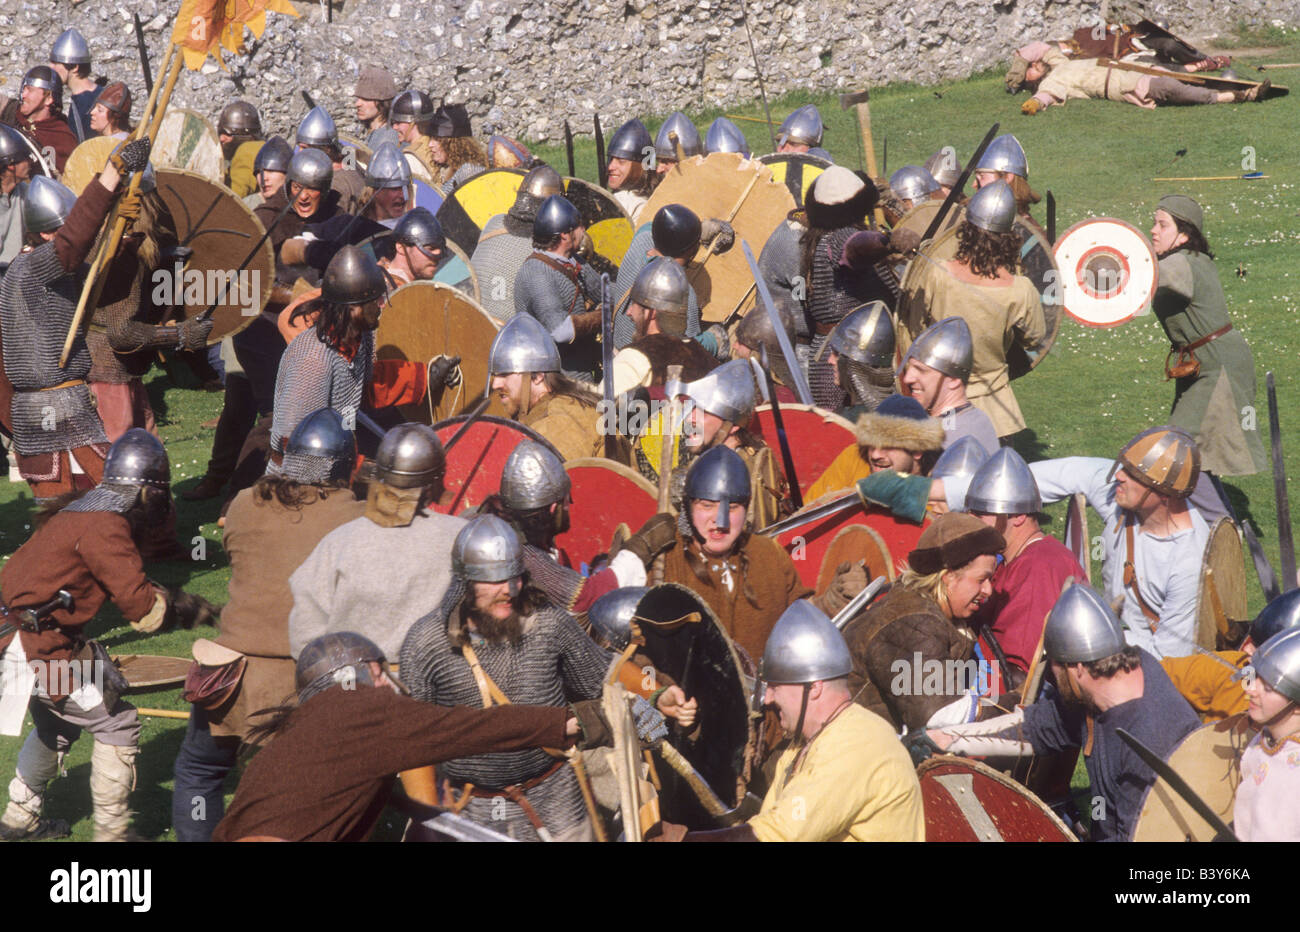 La società norvegese Viking soldati sassone Skirmish battaglia rievocazione storica inglese storia militare combattendo le armi armi Foto Stock